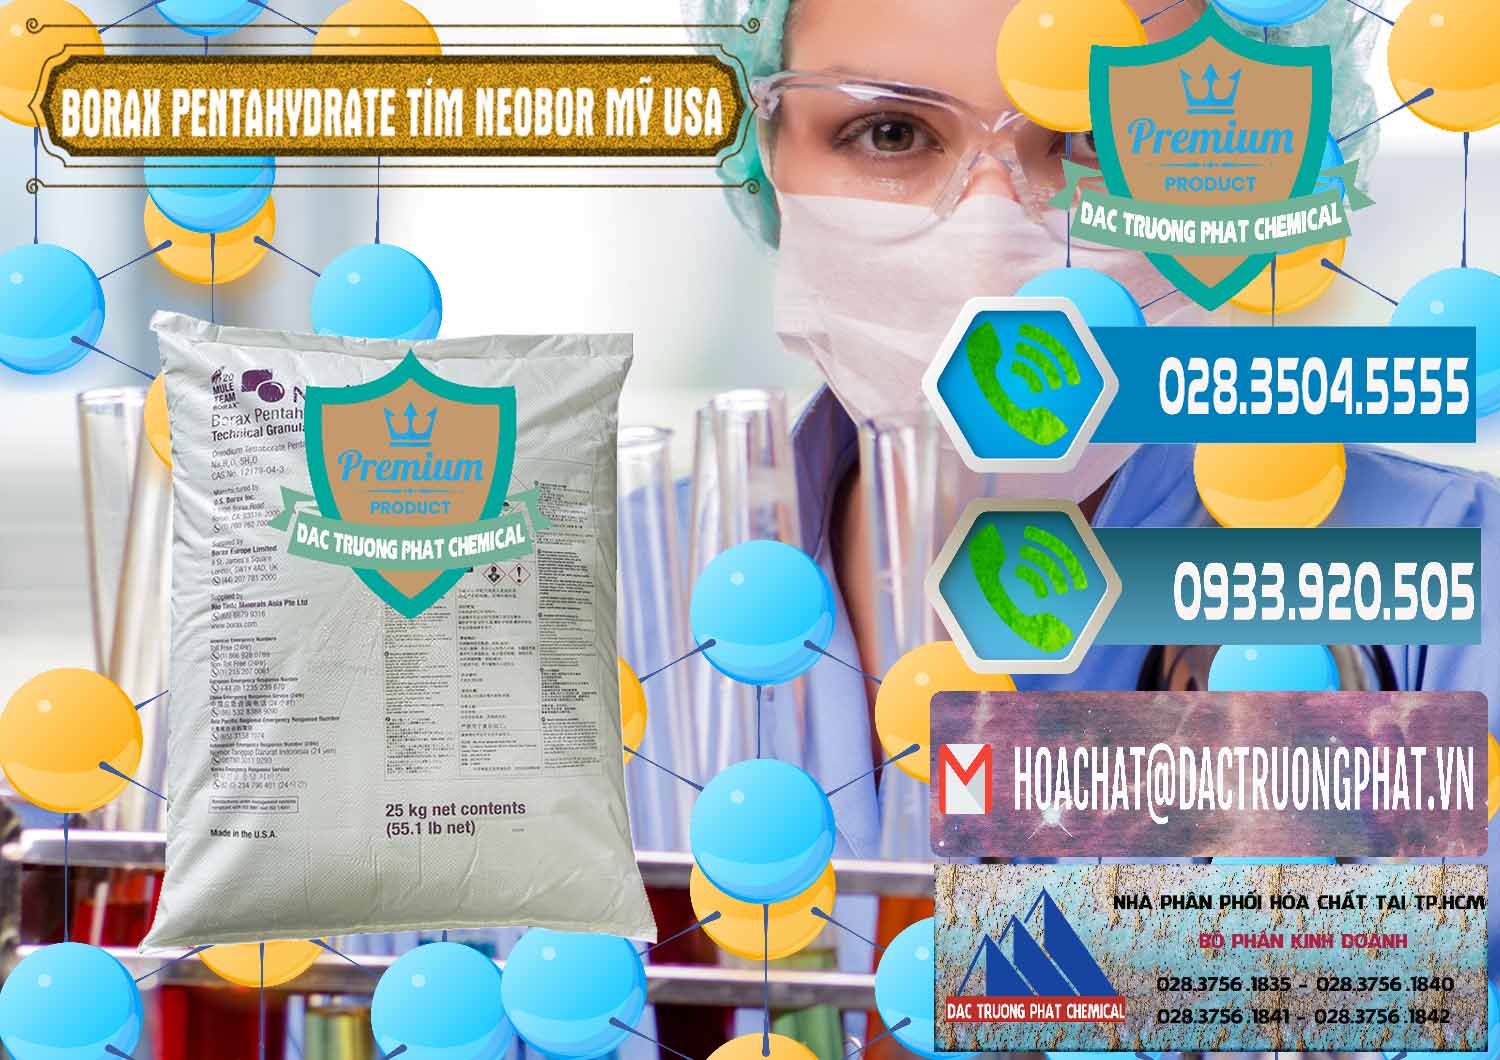 Nơi chuyên bán ( cung cấp ) Borax Pentahydrate Bao Tím Neobor TG Mỹ Usa - 0277 - Nơi bán & phân phối hóa chất tại TP.HCM - congtyhoachat.net